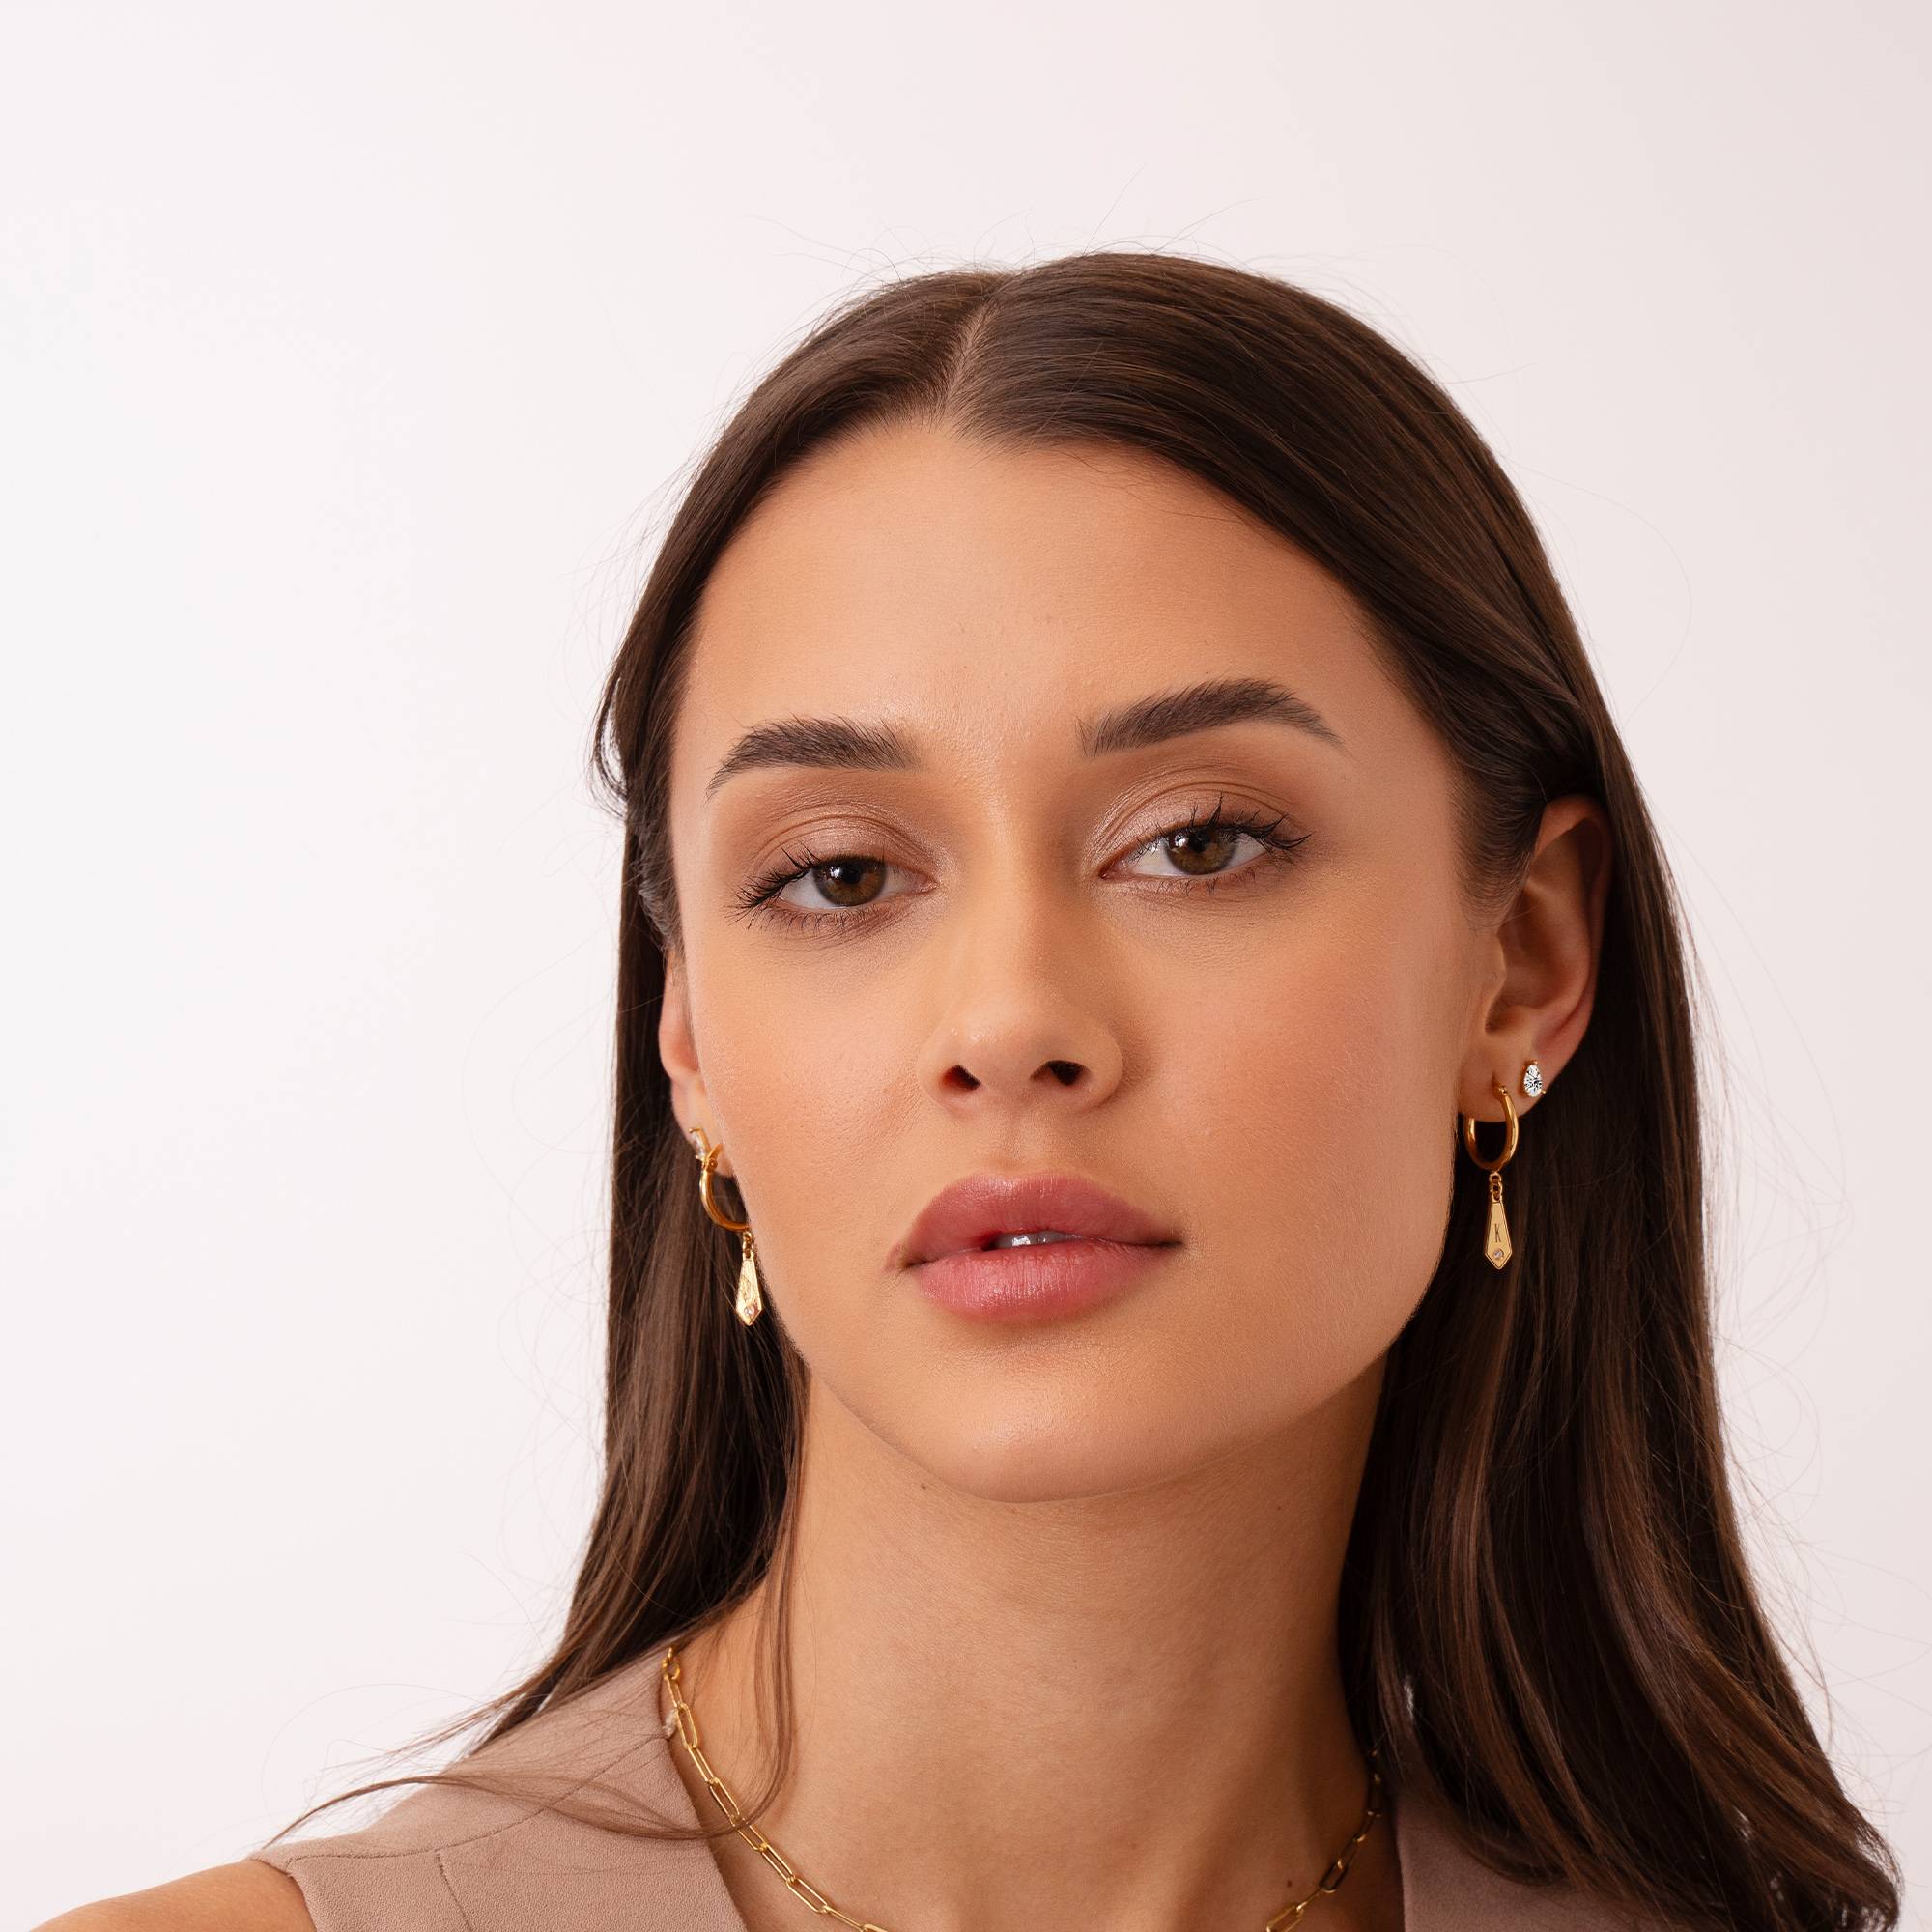 Gia Tropfen Initial Huggie Ohrringe mit Geburtssteinen - 750er Gold-Vermeil-3 Produktfoto